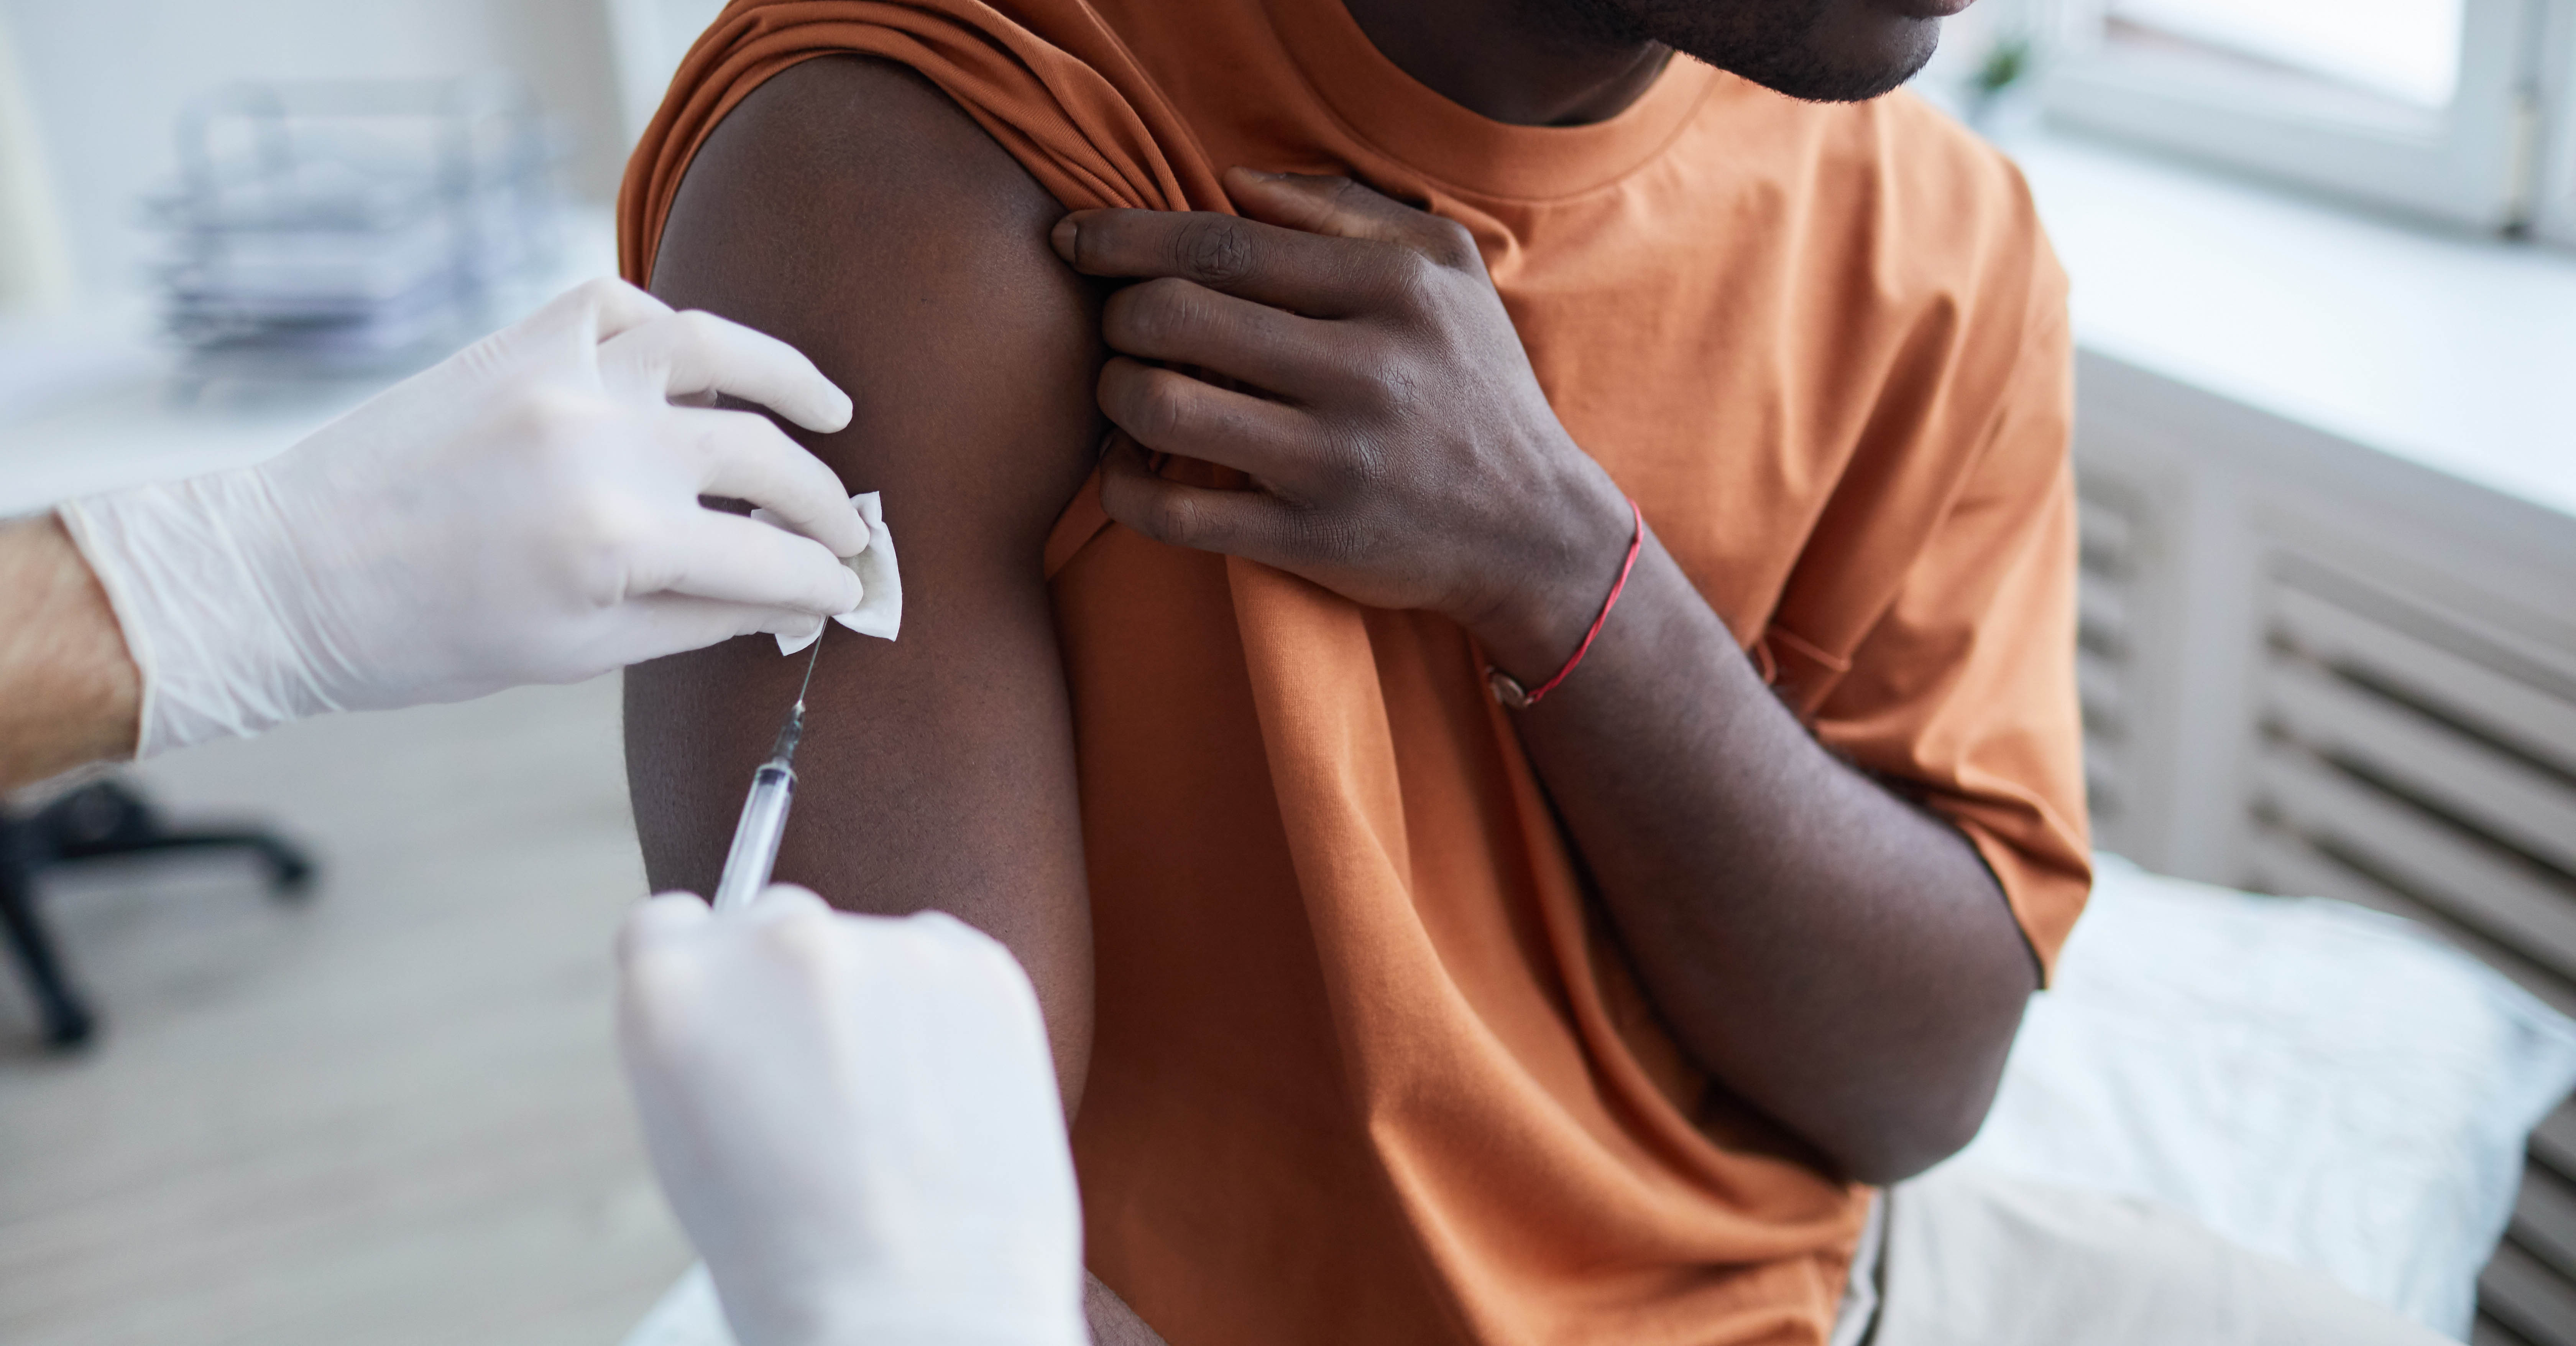 man receiving vaccine